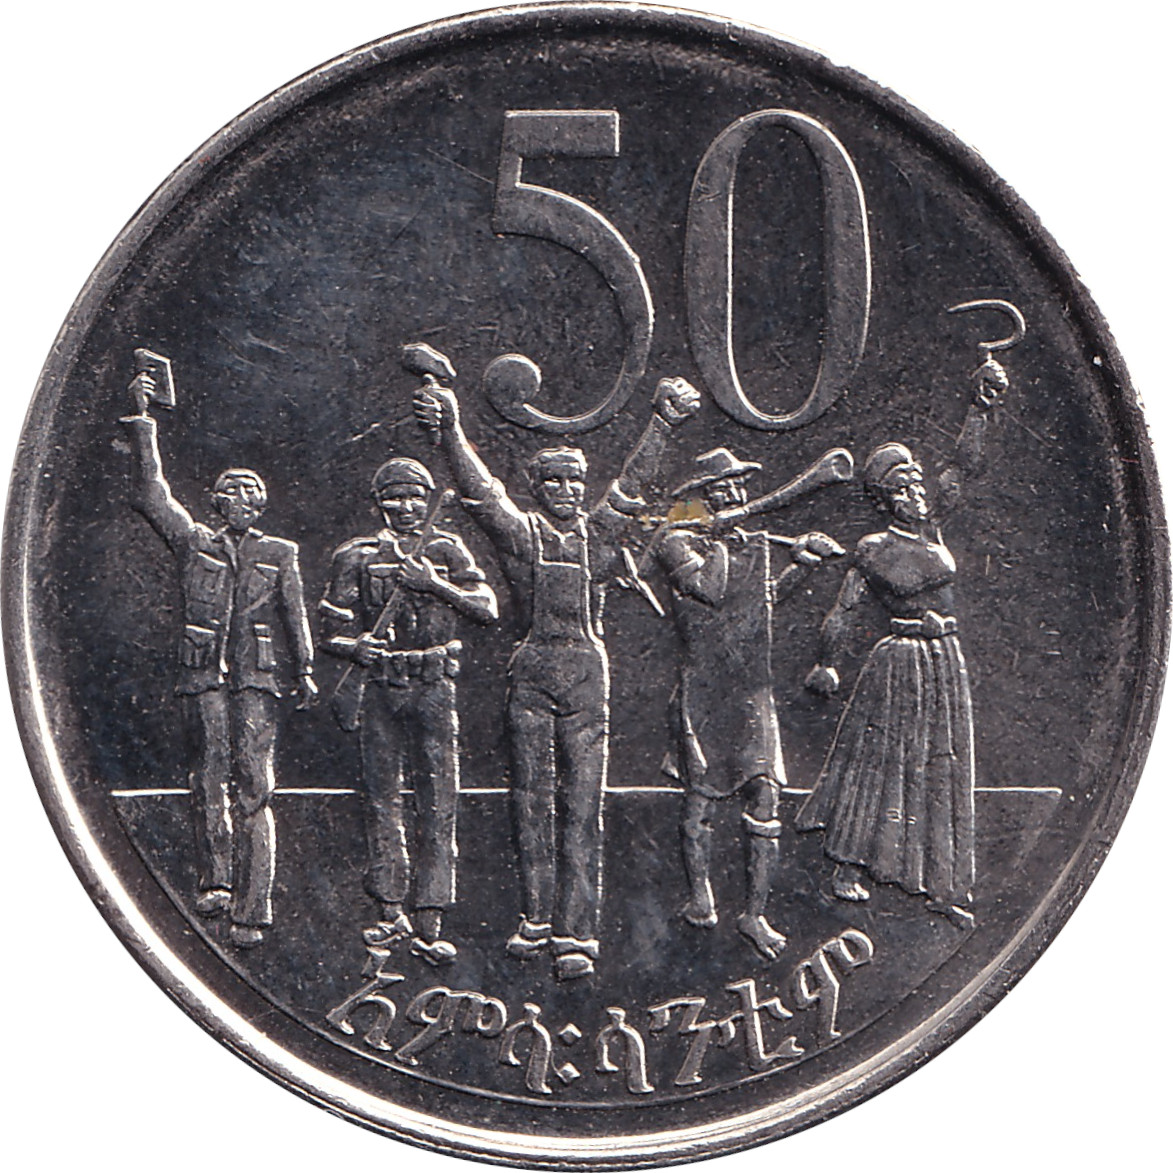 50 cents - Tête de lion